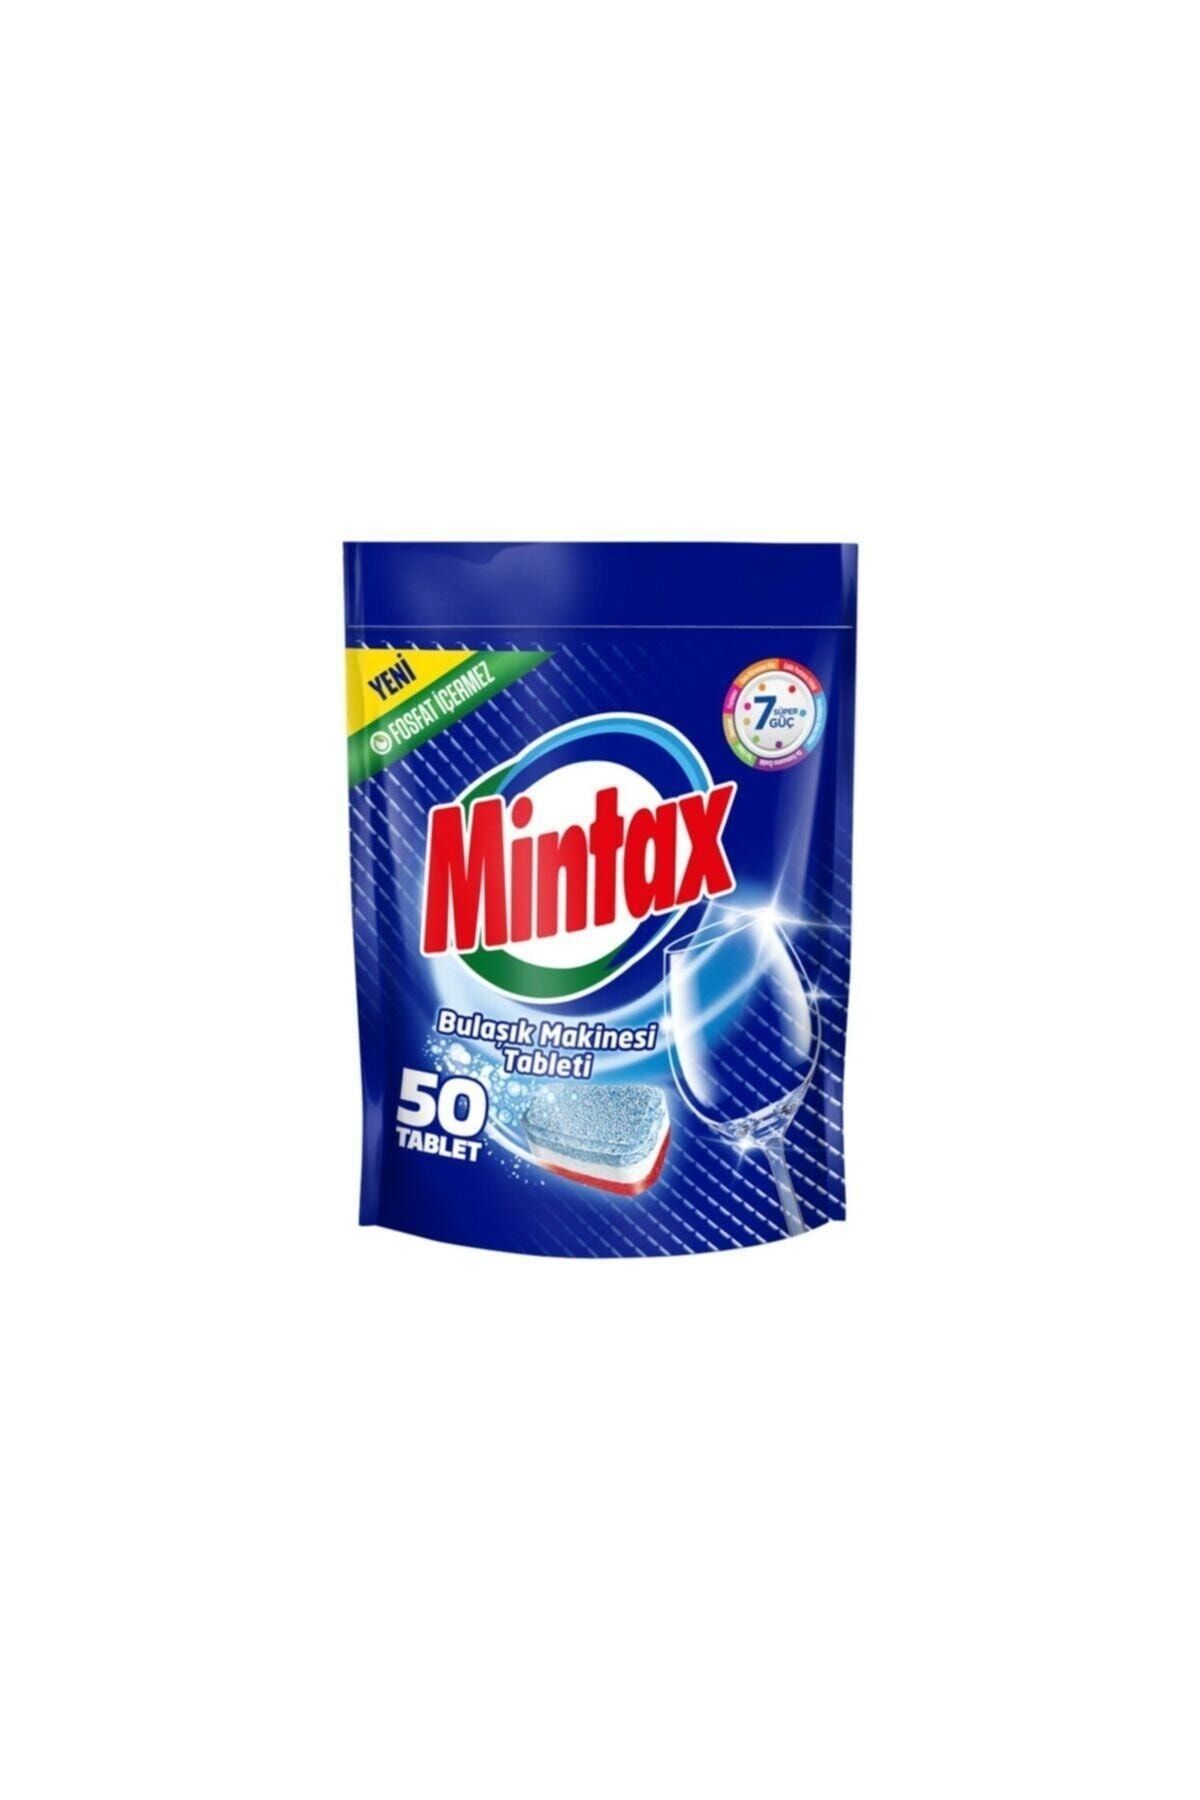 Mintax Bulaşık Makinesi Deterjanı 50 Tablet